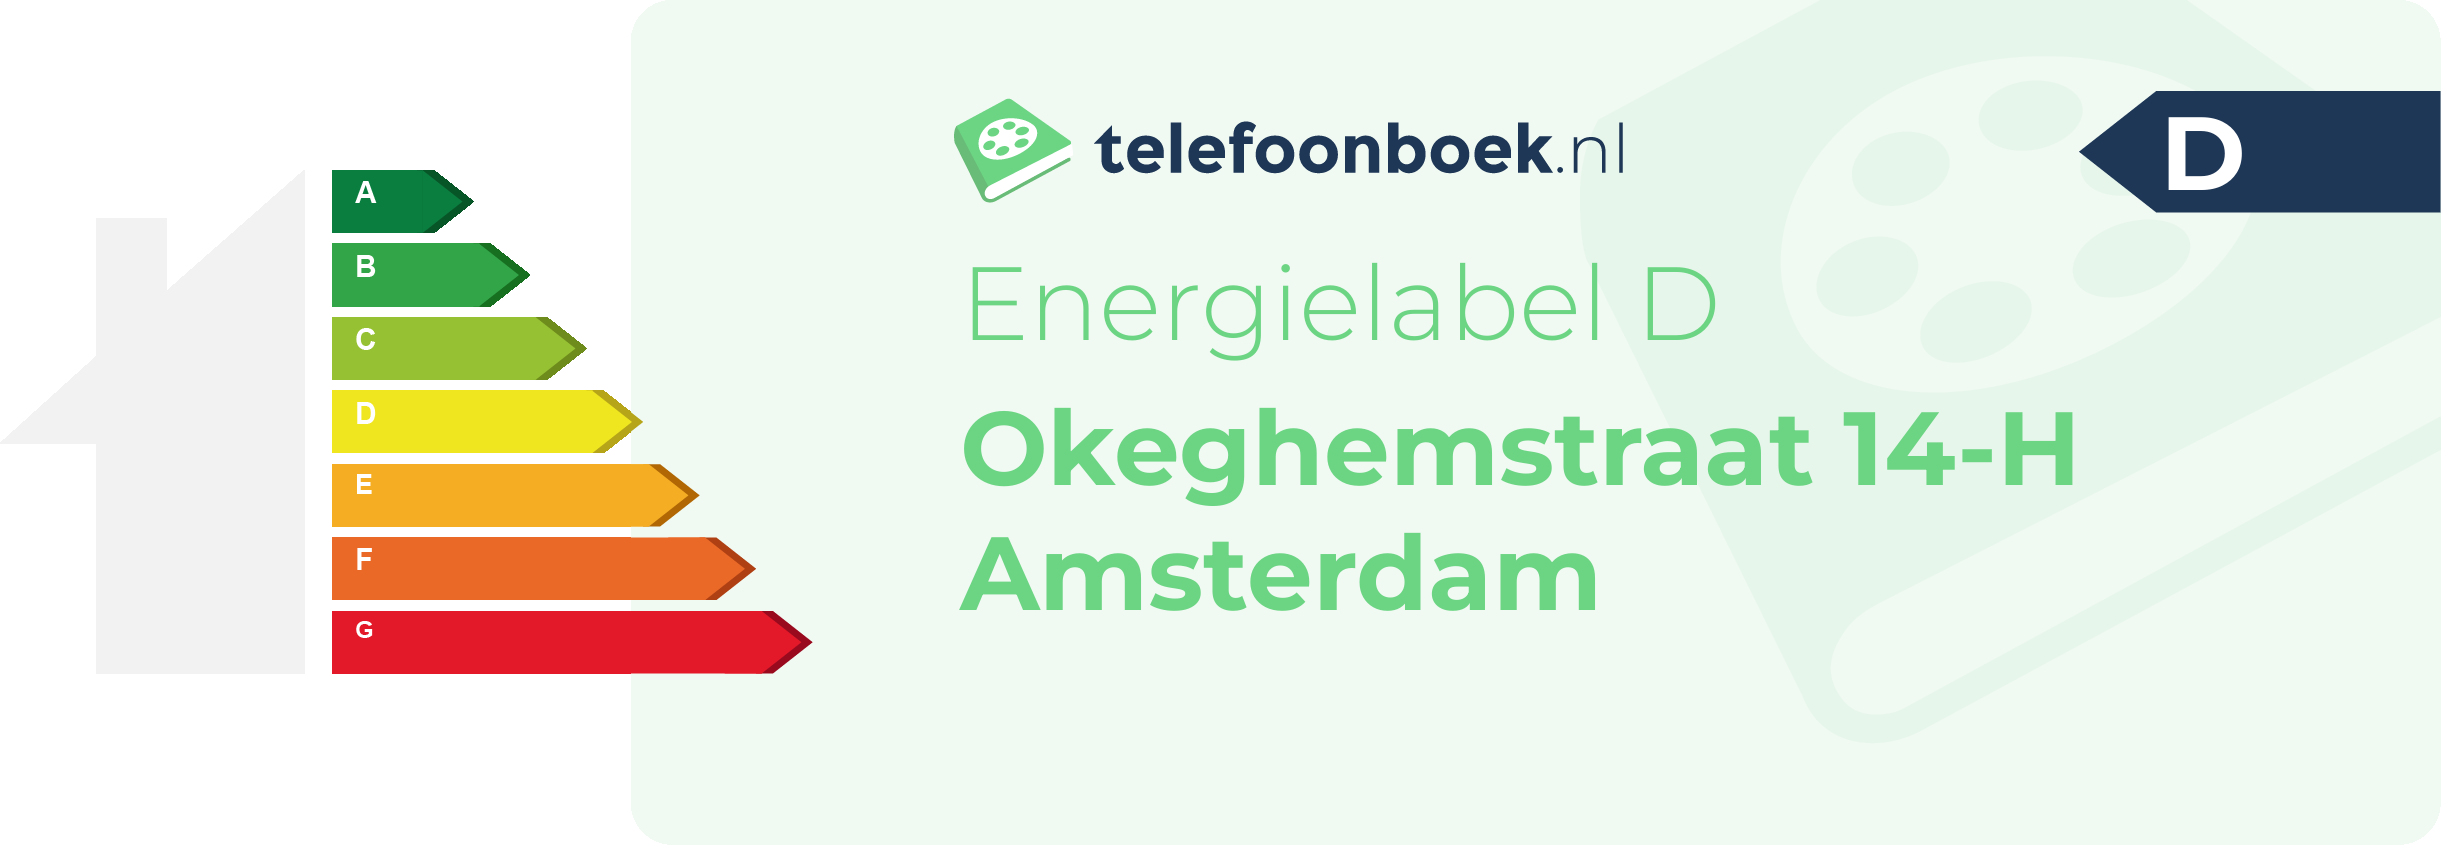 Energielabel Okeghemstraat 14-H Amsterdam